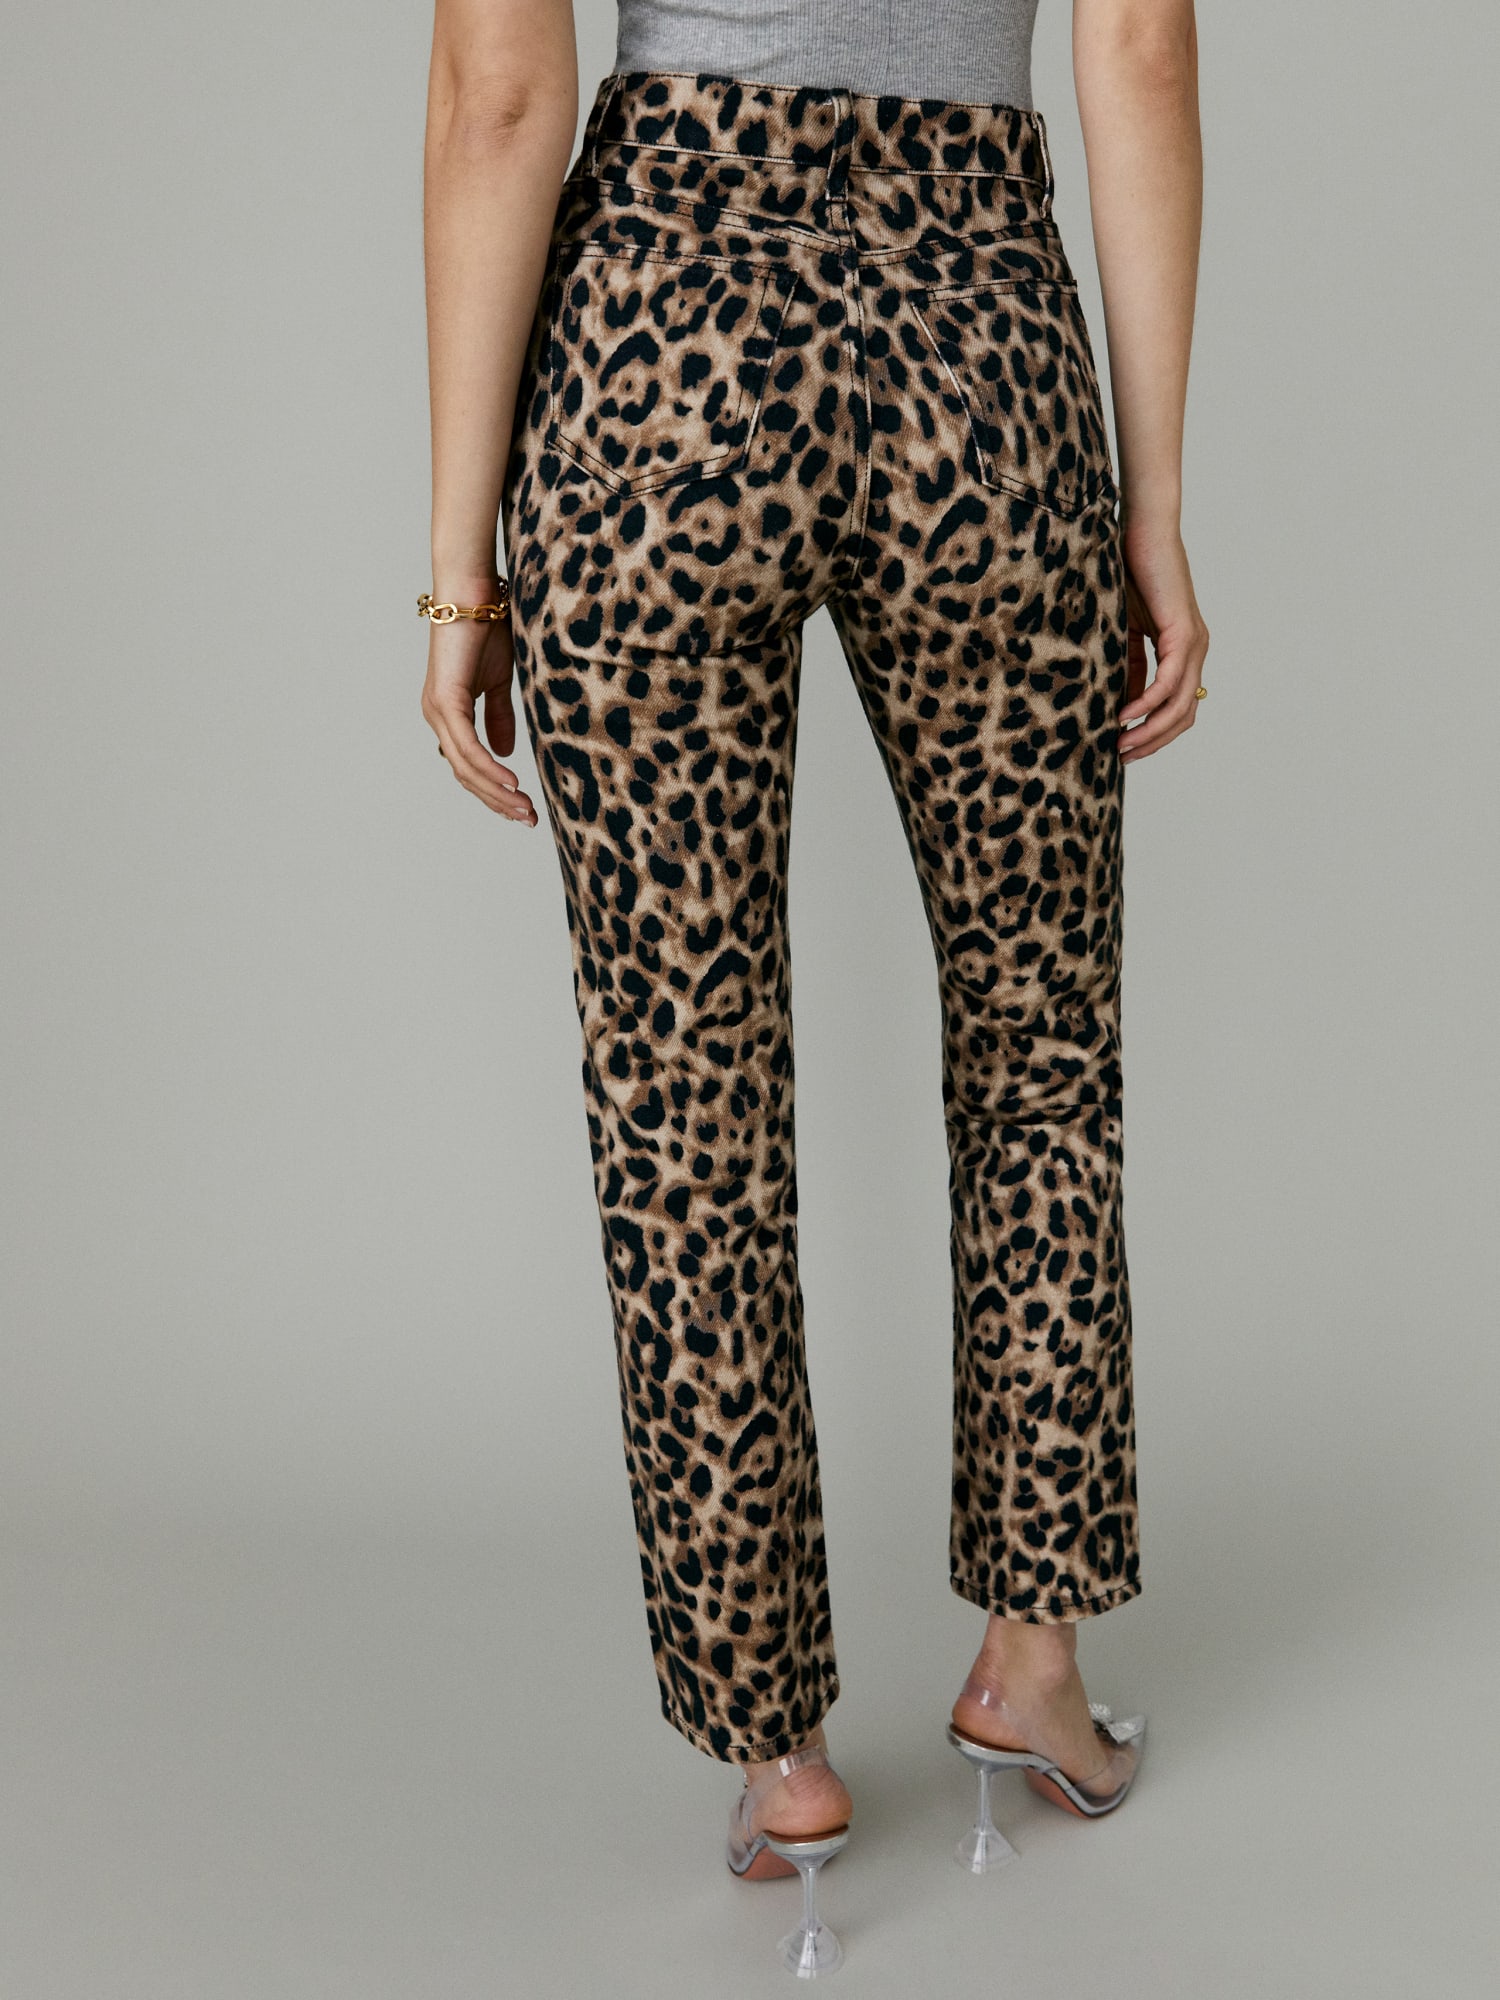 Reformation Leopard Pants | vlr.eng.br